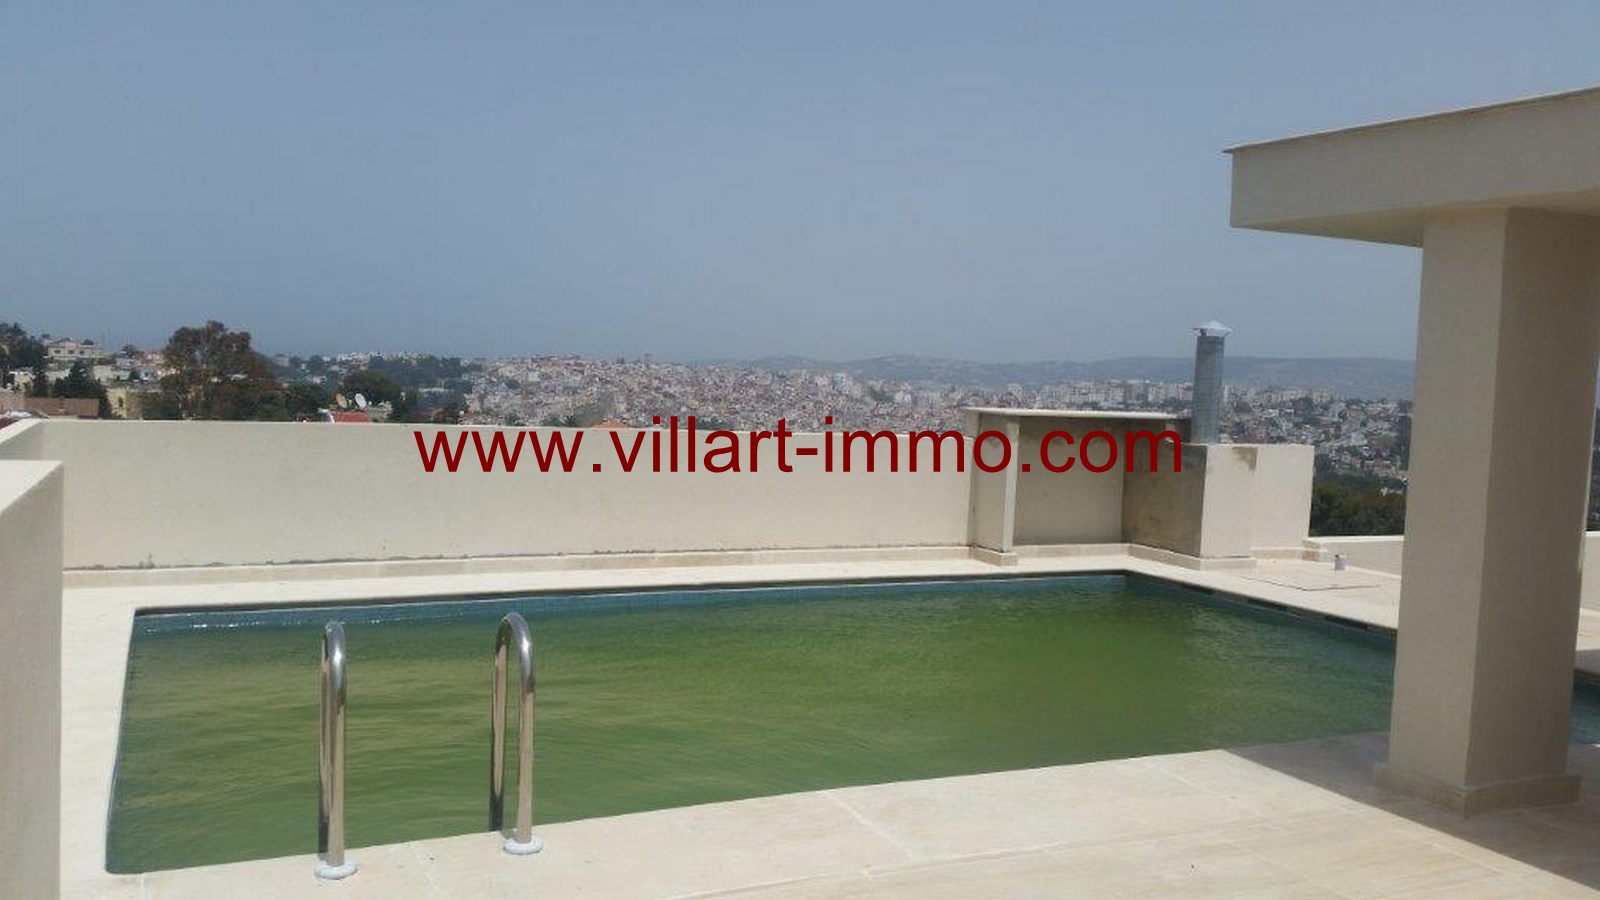 1-a-vendre-tanger-villa-la-montagne-piscine-vv421-villart-immo-agence-immobiliere